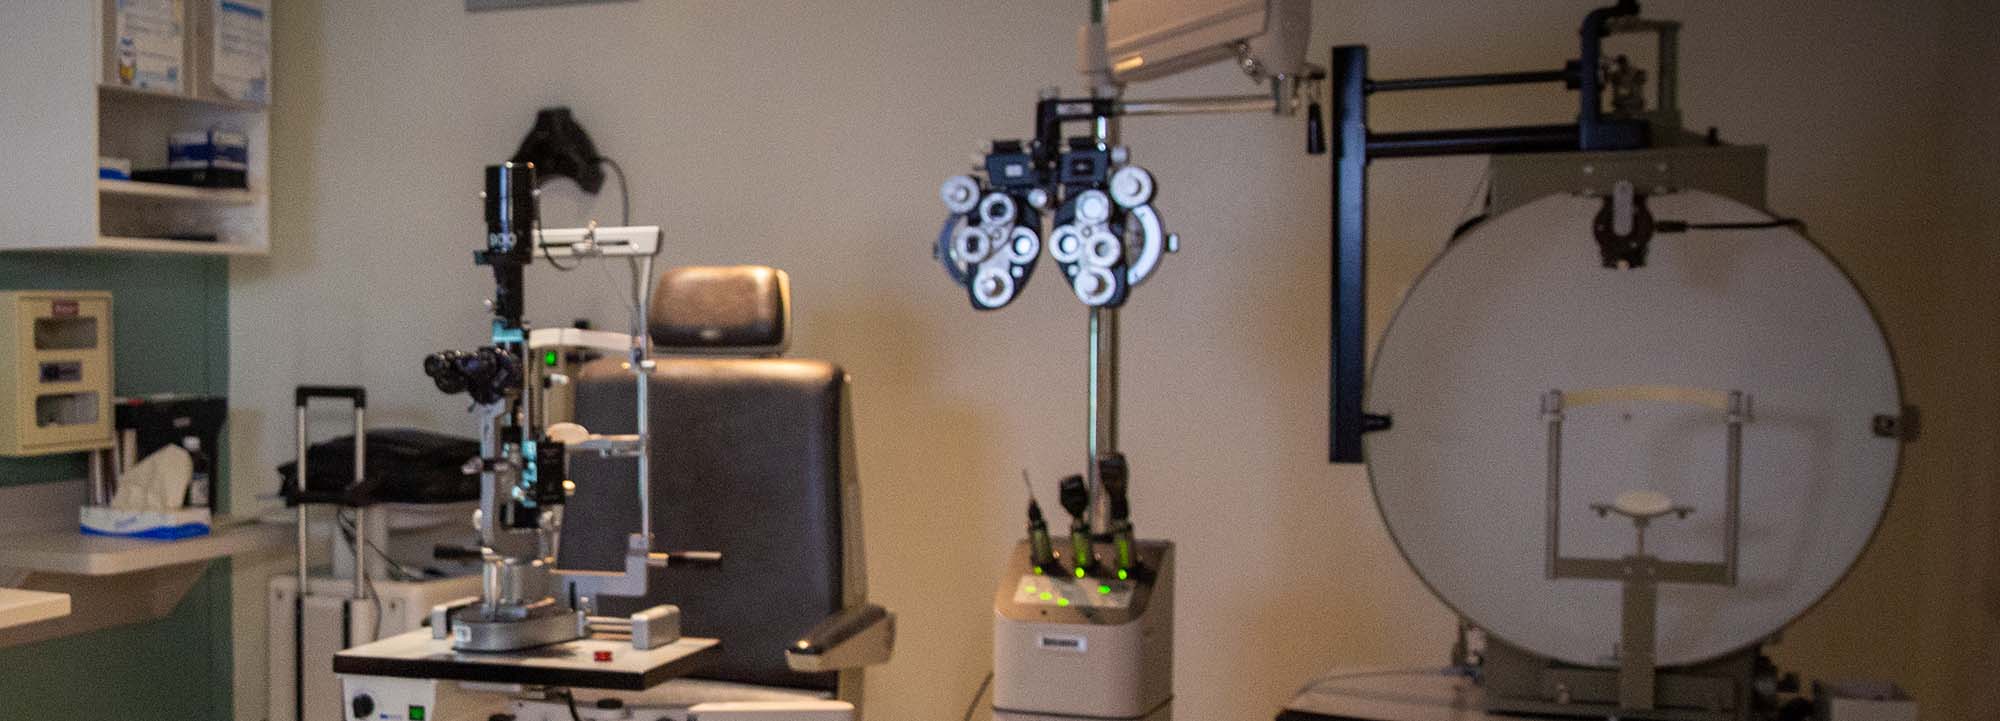 Matériel d'ophtalmologie dans une clinique ophtalmologique